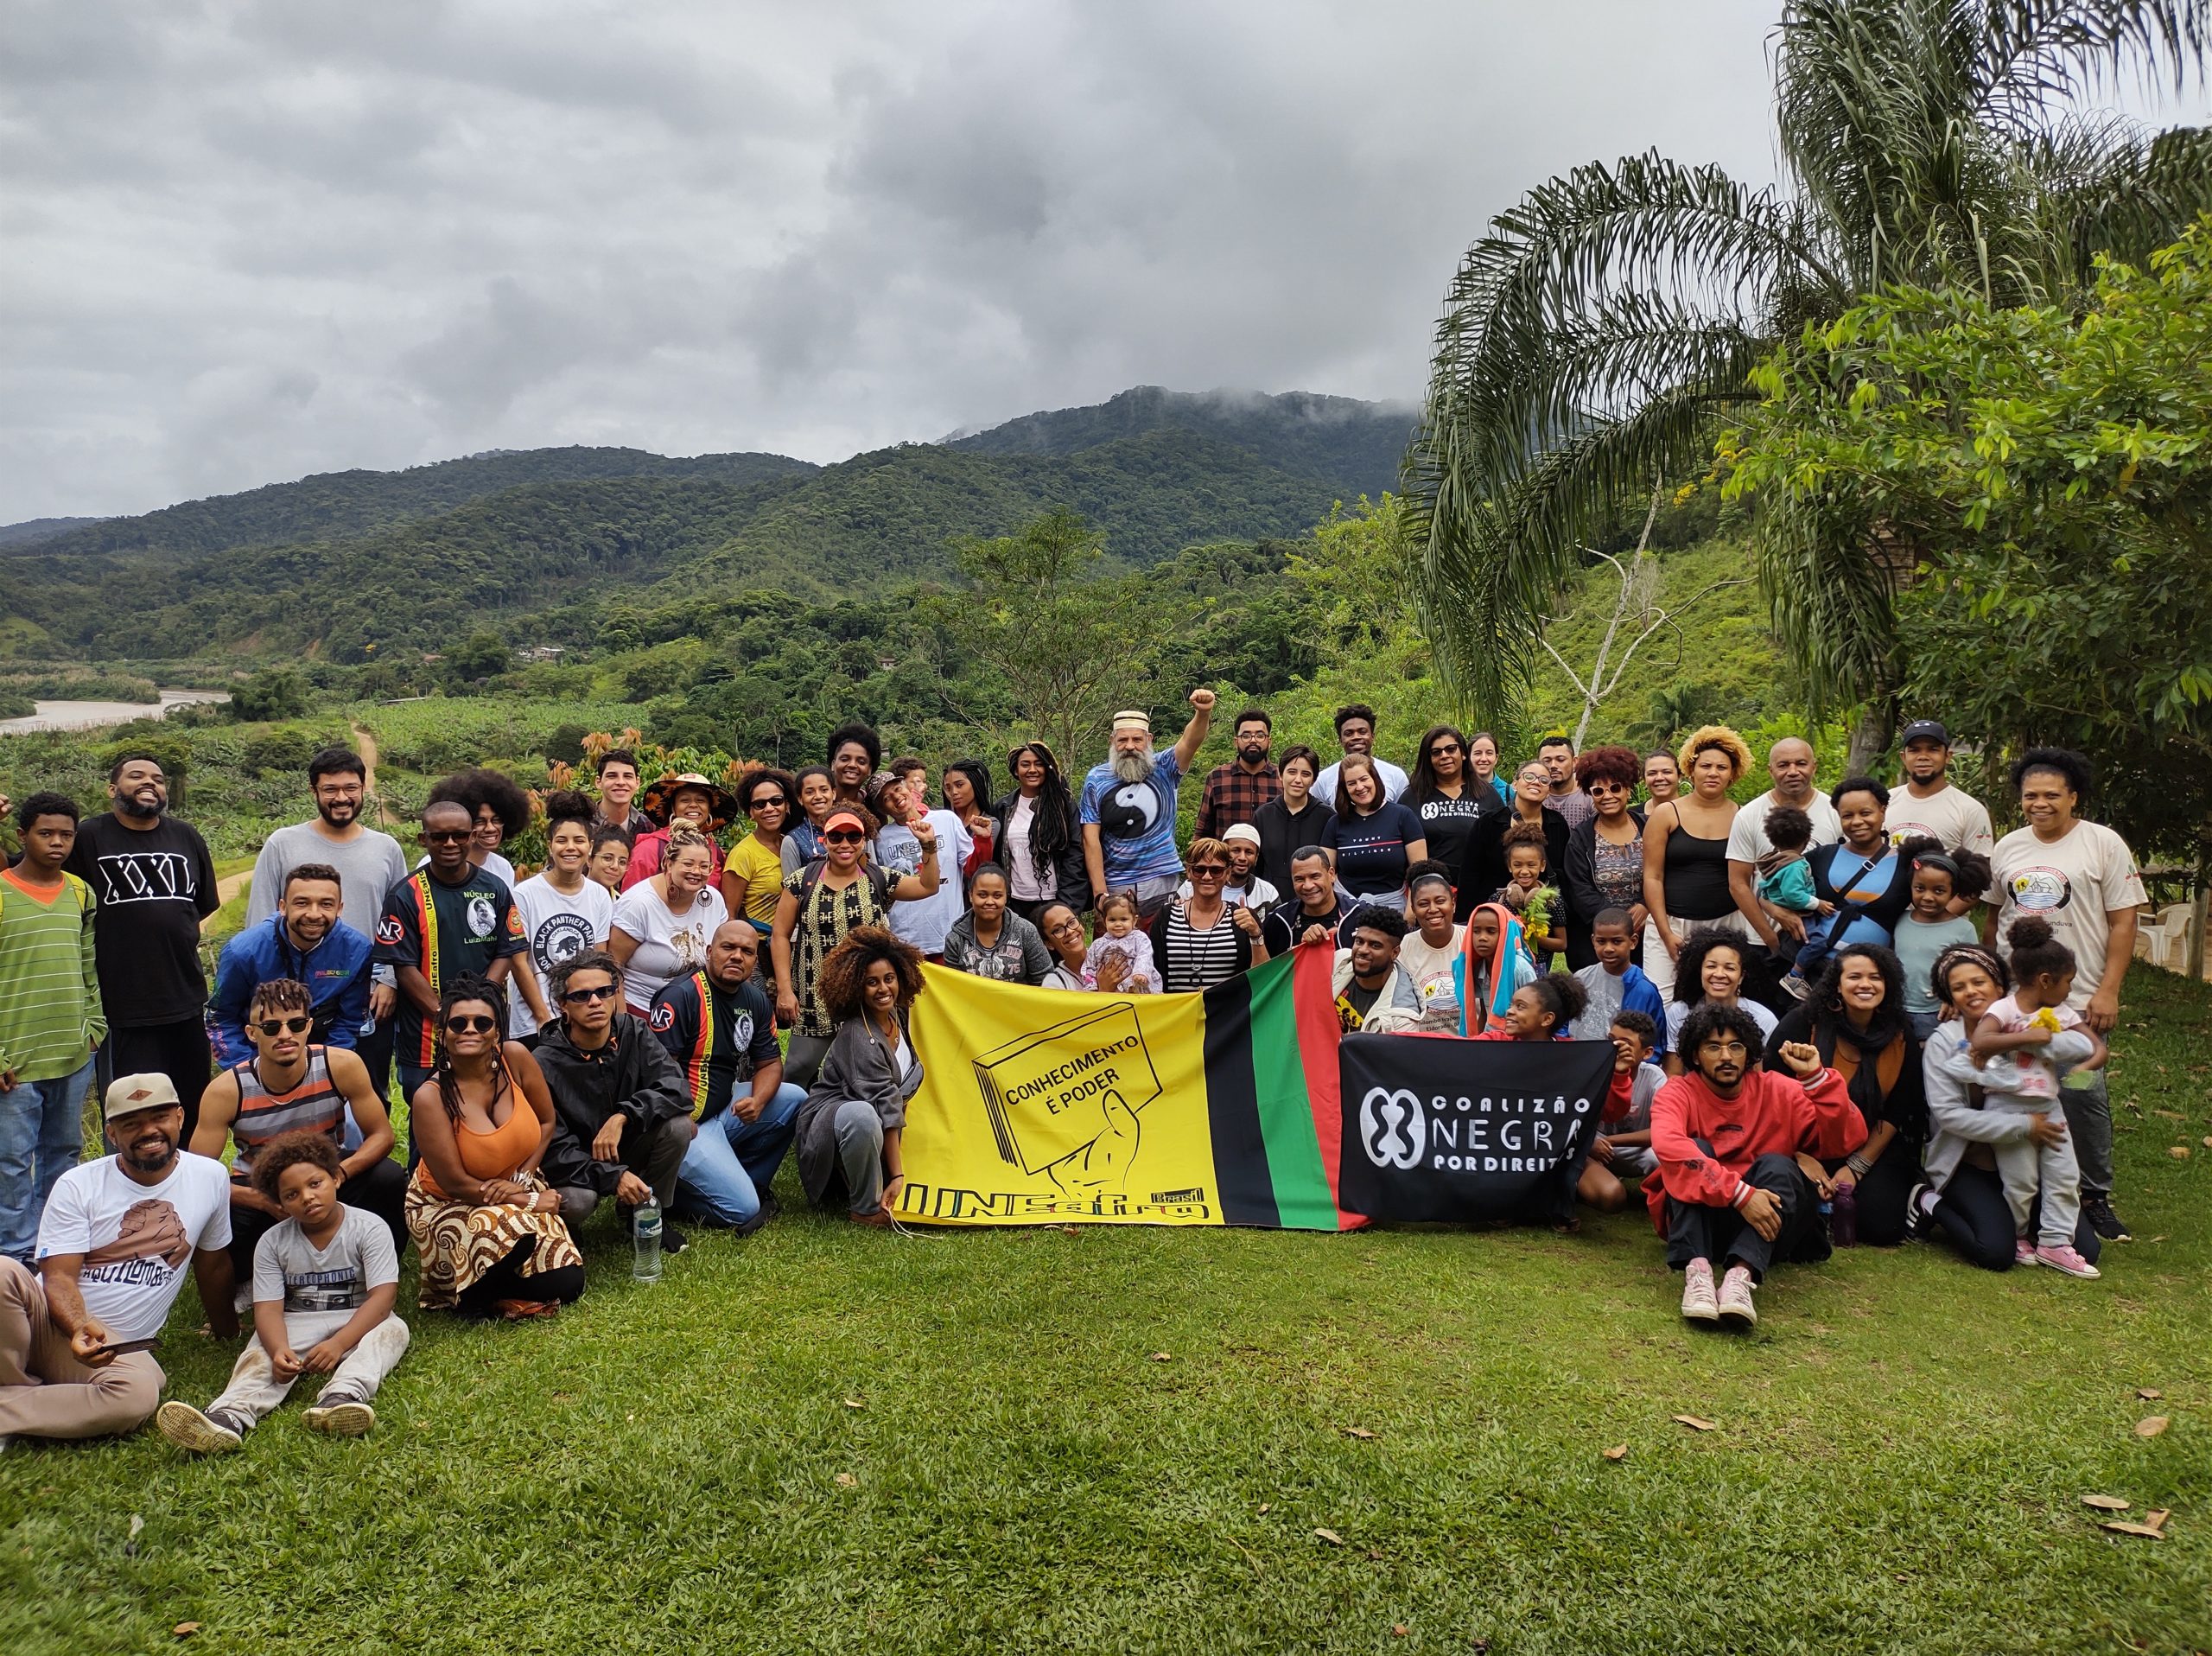 União campo-cidade: Imersão no Quilombo Ivaporunduva por trocas de saberes não coloniais